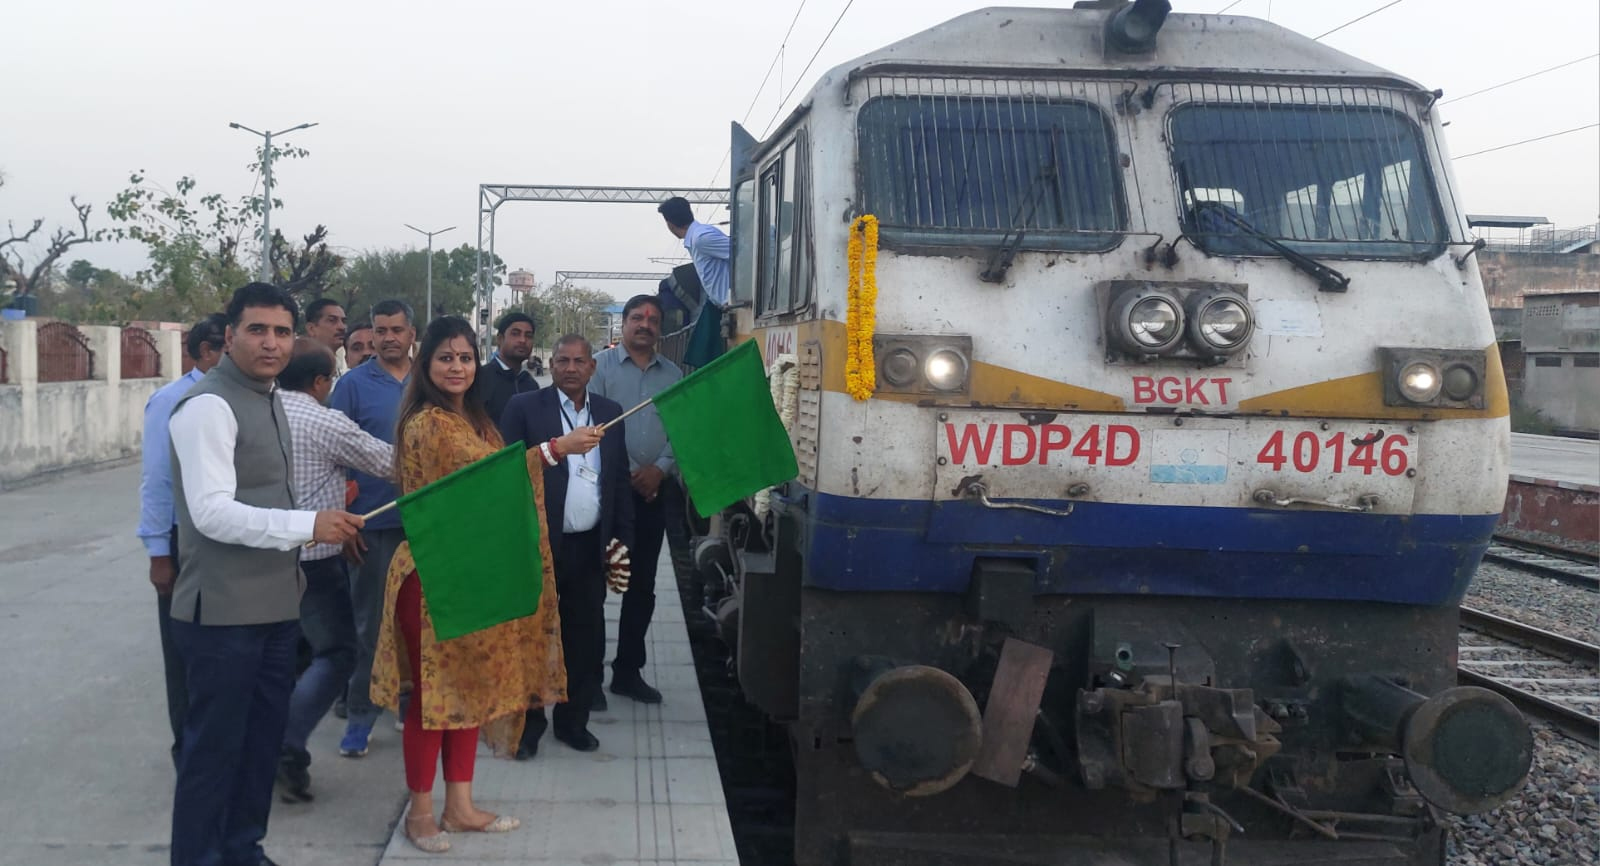 श्रीगंगानगर-बान्द्रा टर्मिनस-श्रीगंगानगर अमरापुर अरावली एक्सप्रेस रेलसेवा का ढेहर का बालाजी स्टेशन पर ठहराव